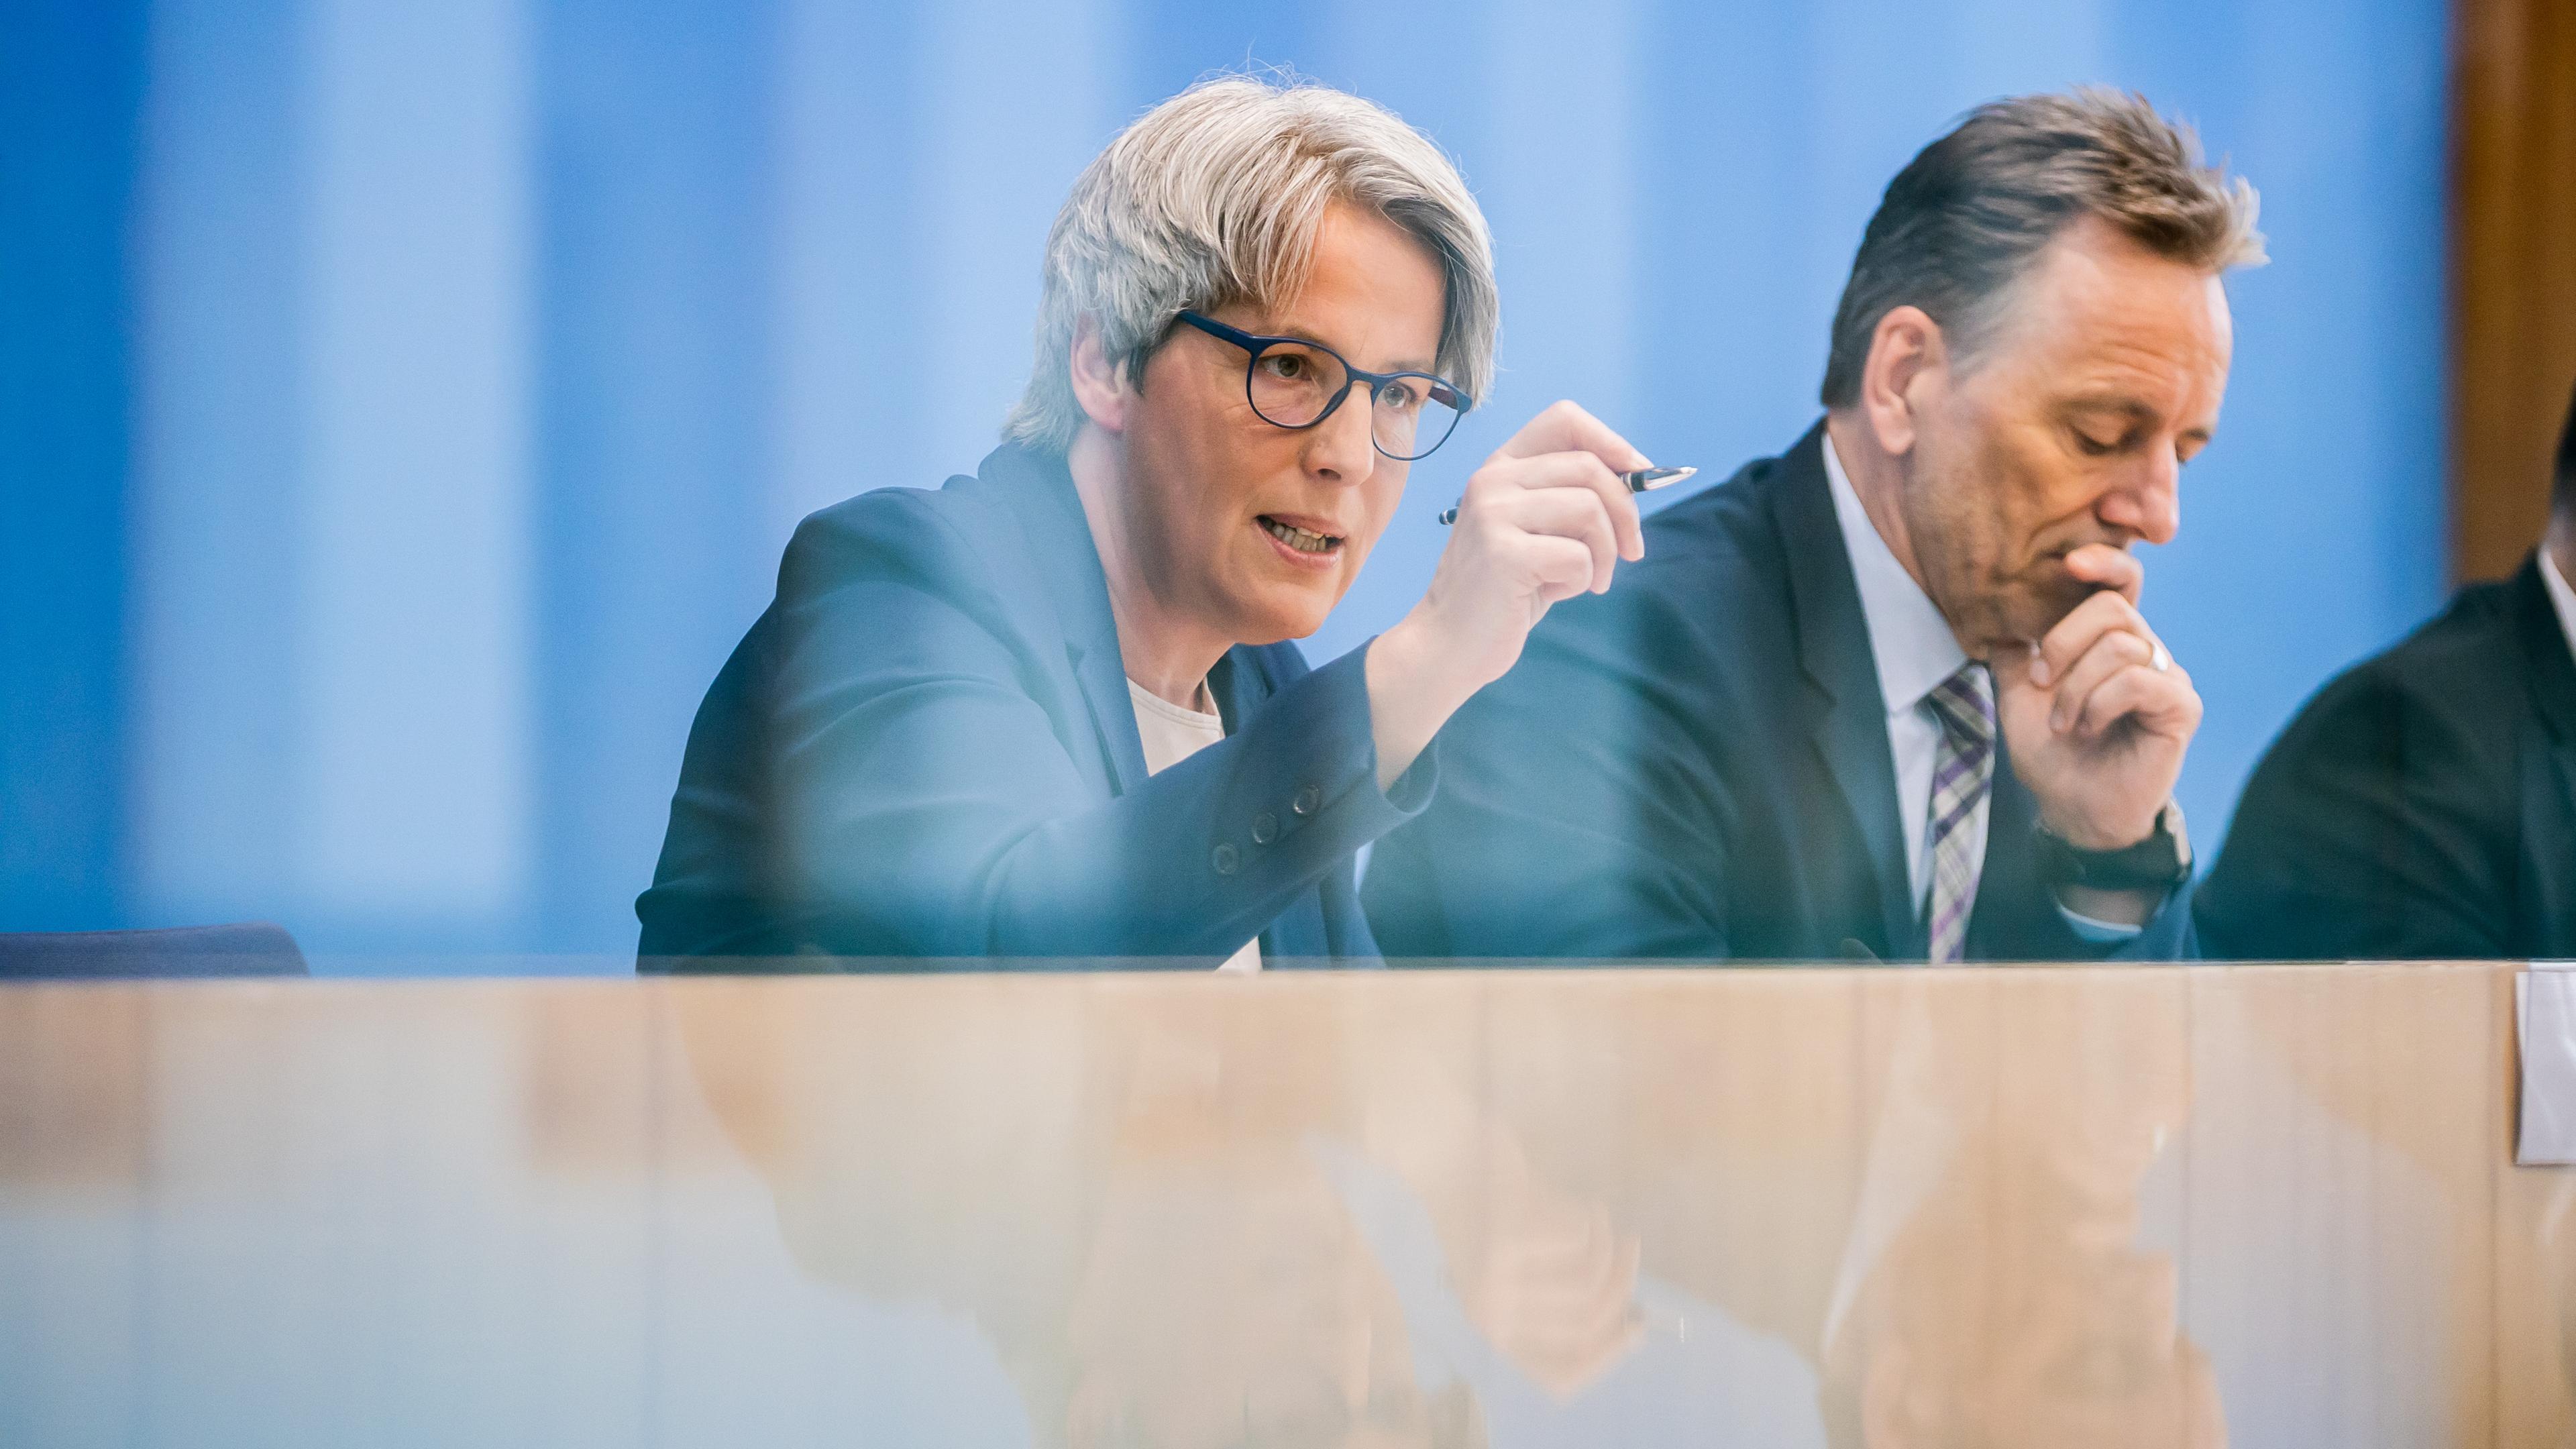 Kerstin Claus, unabhängige Beauftragte für Fragen des sexuellen Kindesmissbrauchs, und Holger Münch, Präsident des Bundeskriminalamtes